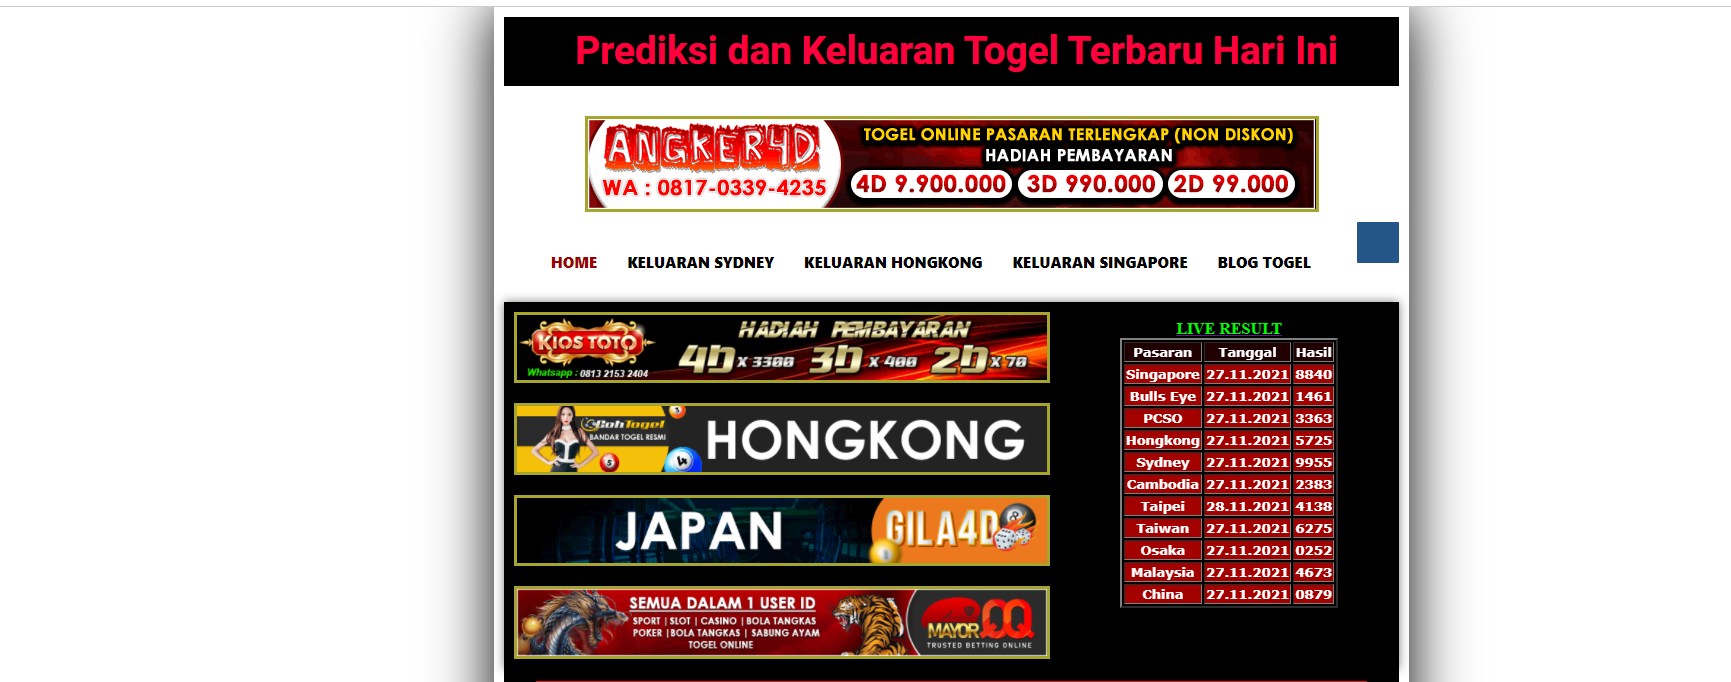 Bermain Togel Online di Indonesia - Prediksi Judi Togel